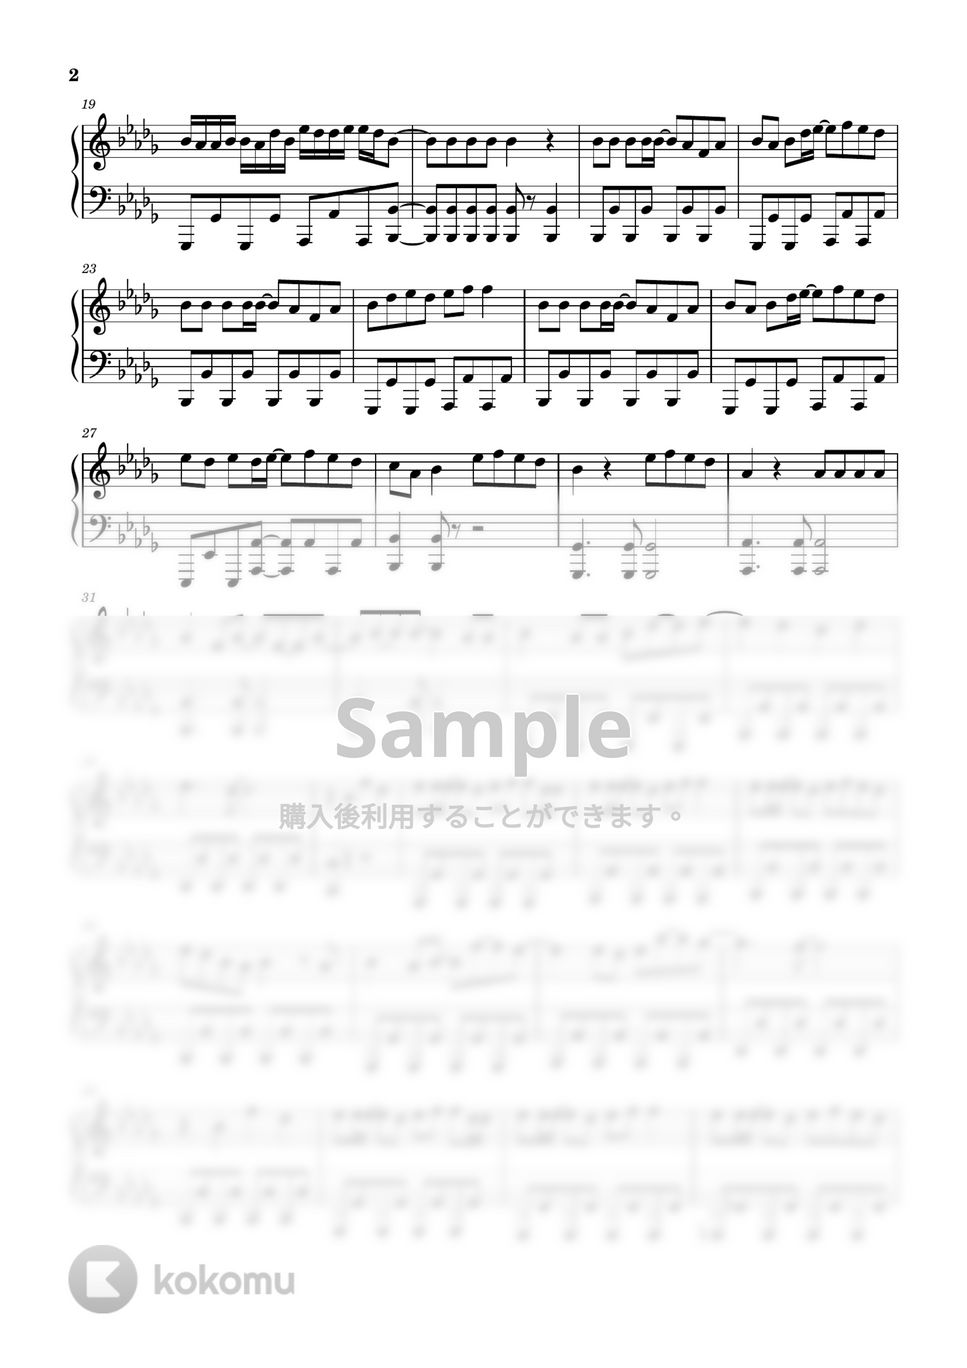 すとぷり - 星の如く (ピアノソロ譜) by 萌や氏